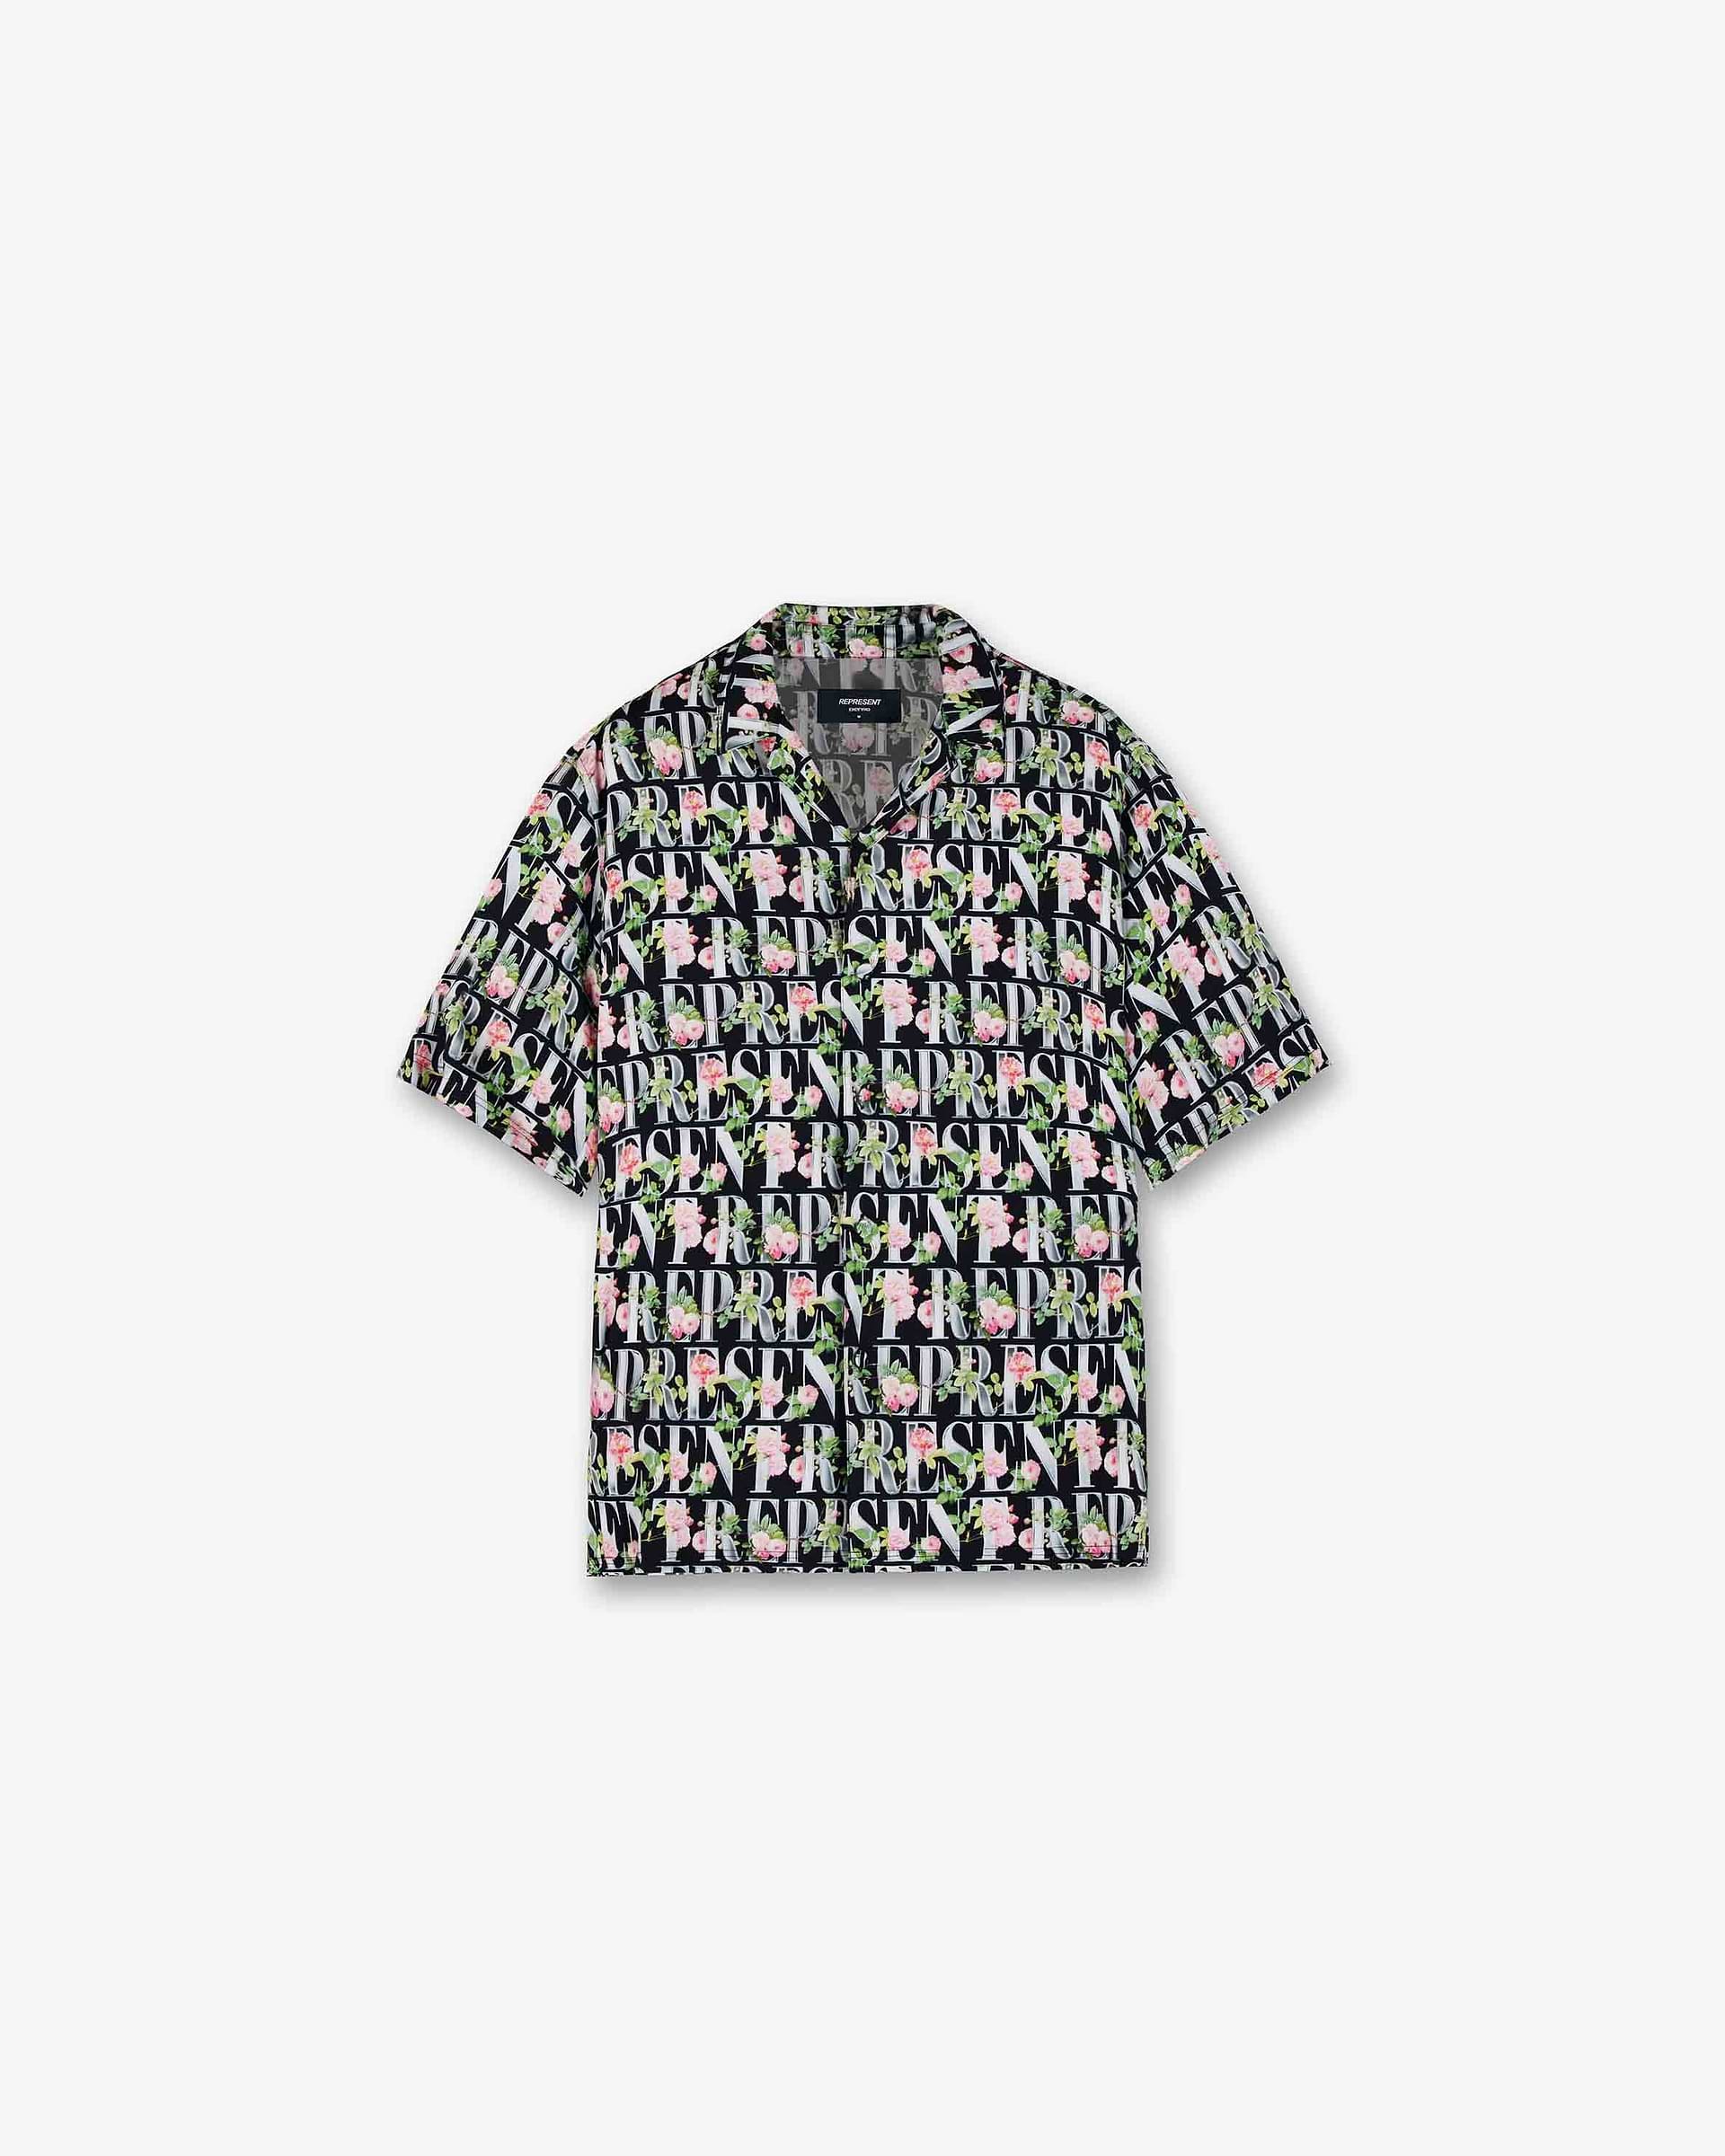 Floral Represent Shirt | Black Shirts SC23 | Represent Clo